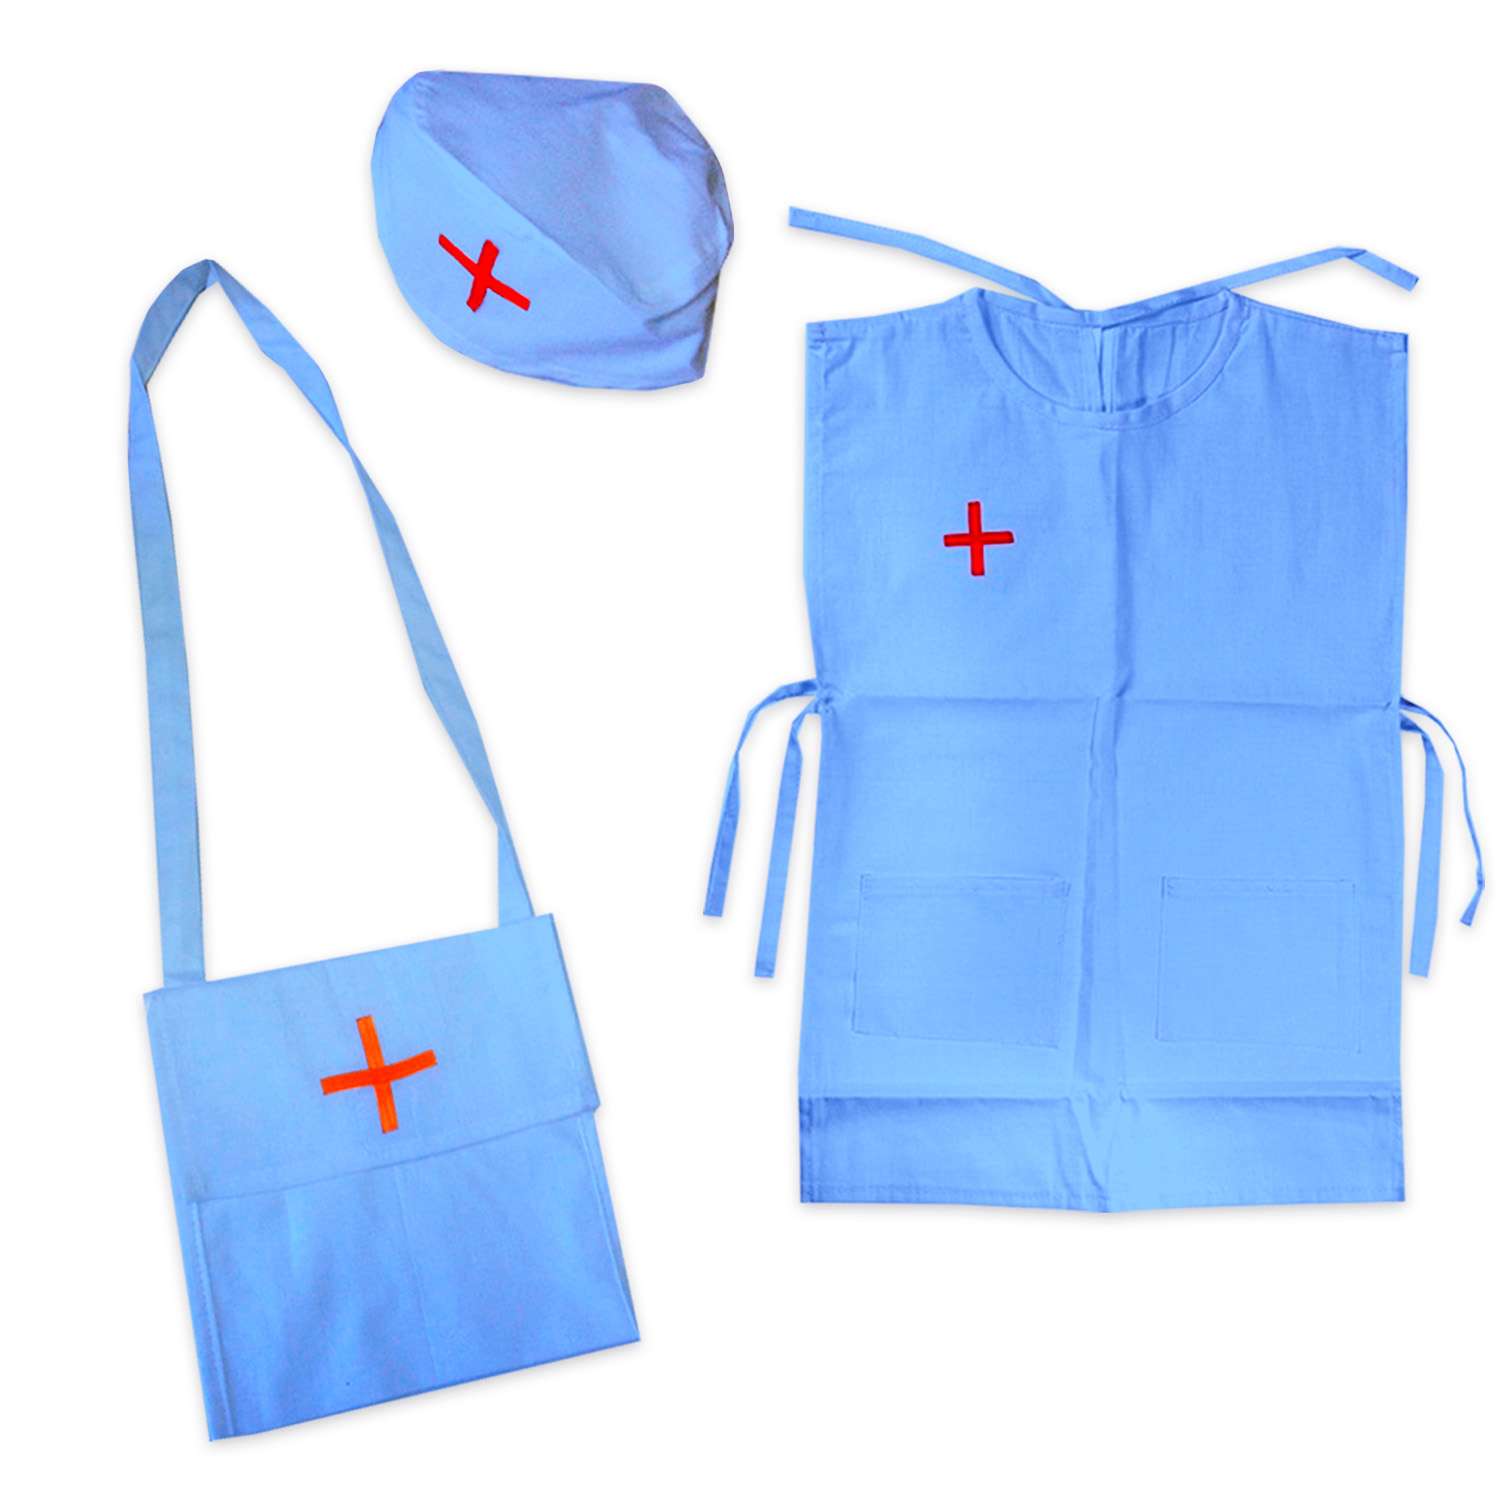 Костюм Тутси игровой набор Докторёнок голубой фартук колпак сумочка 802-2022 - фото 1